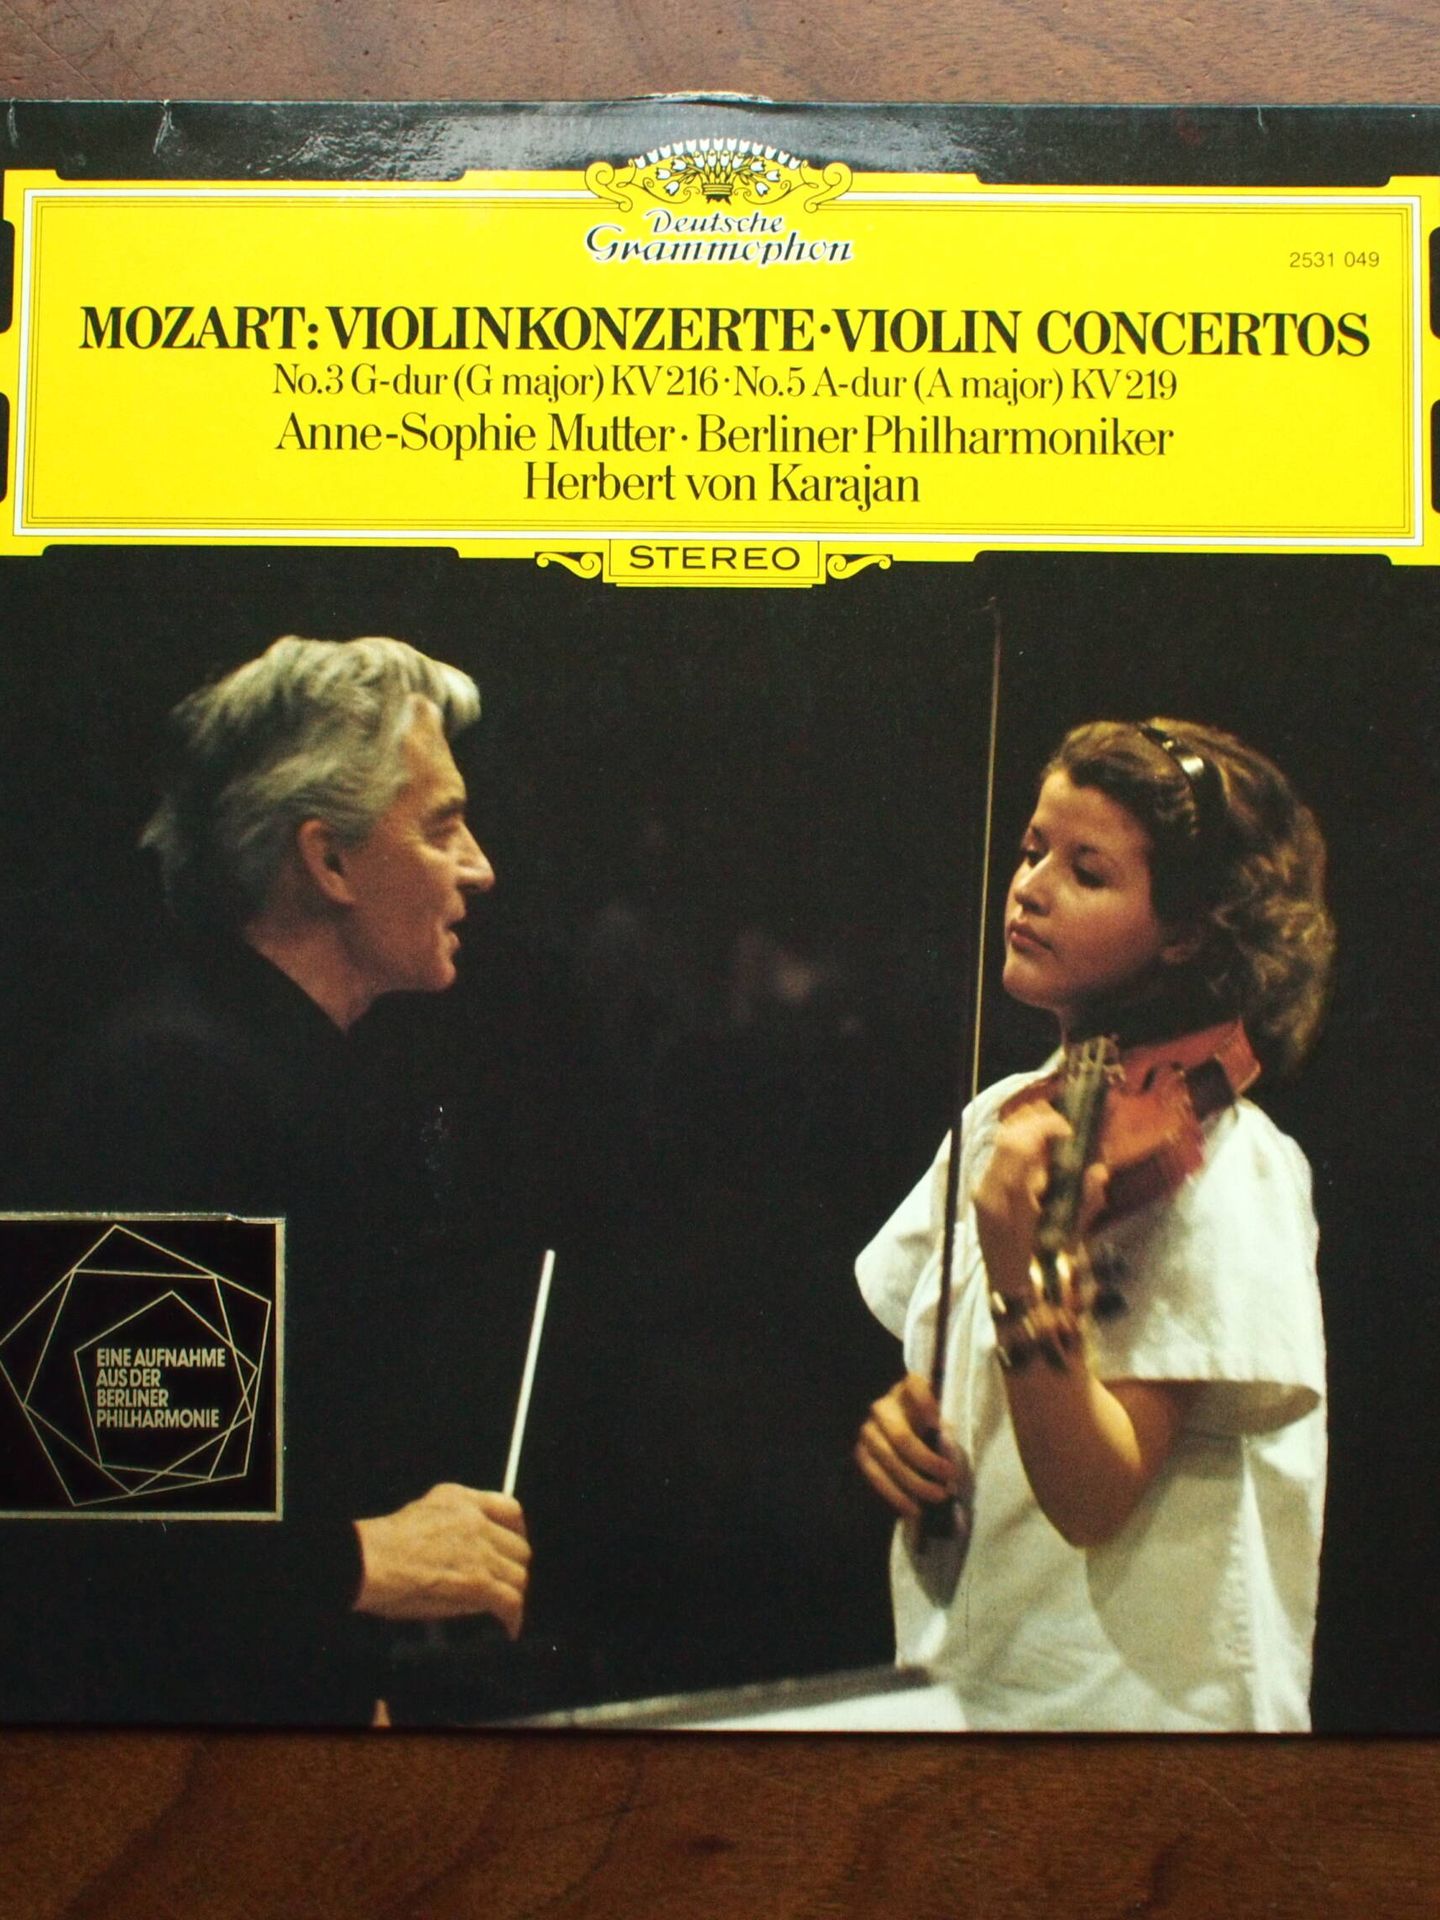 Anne-Sophie Mutter, en un concierto para violín cuando era niña. (Cedida)